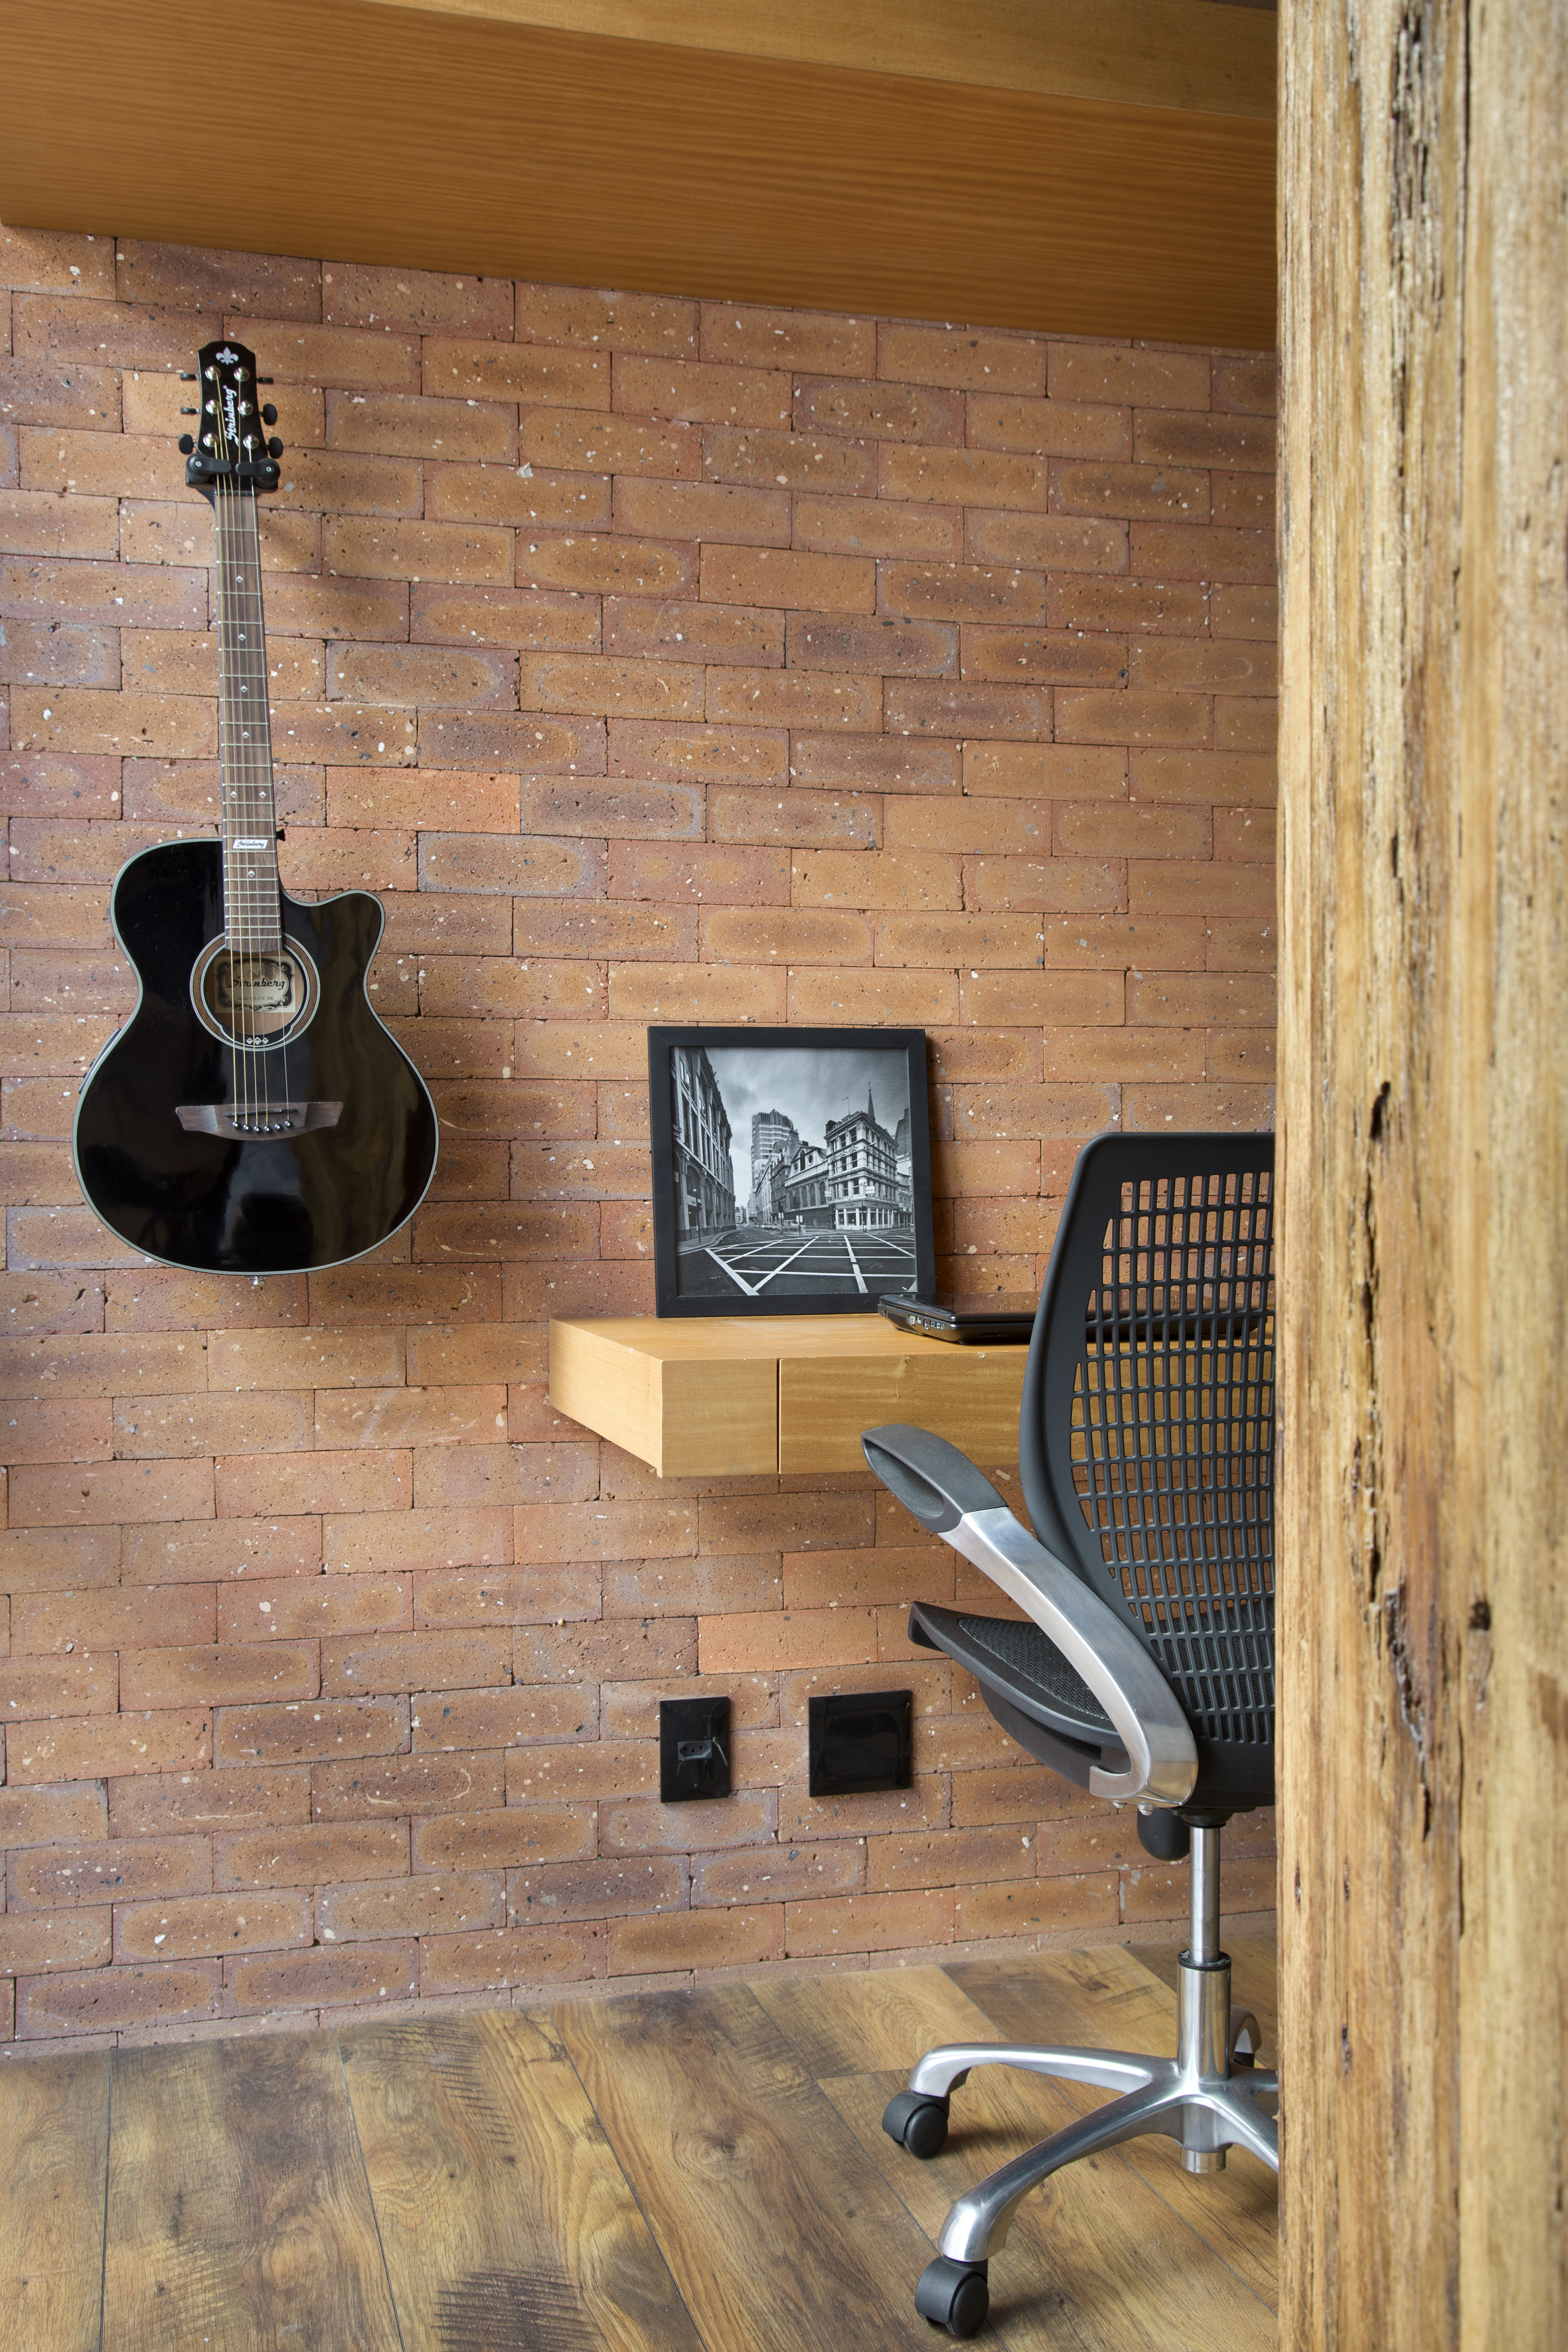 Loft de 70 m² ganha décor industrial inspirado em Nova York. Projeto de Rafael Mirza. Na foto, home office com parede de tijolo aparente.